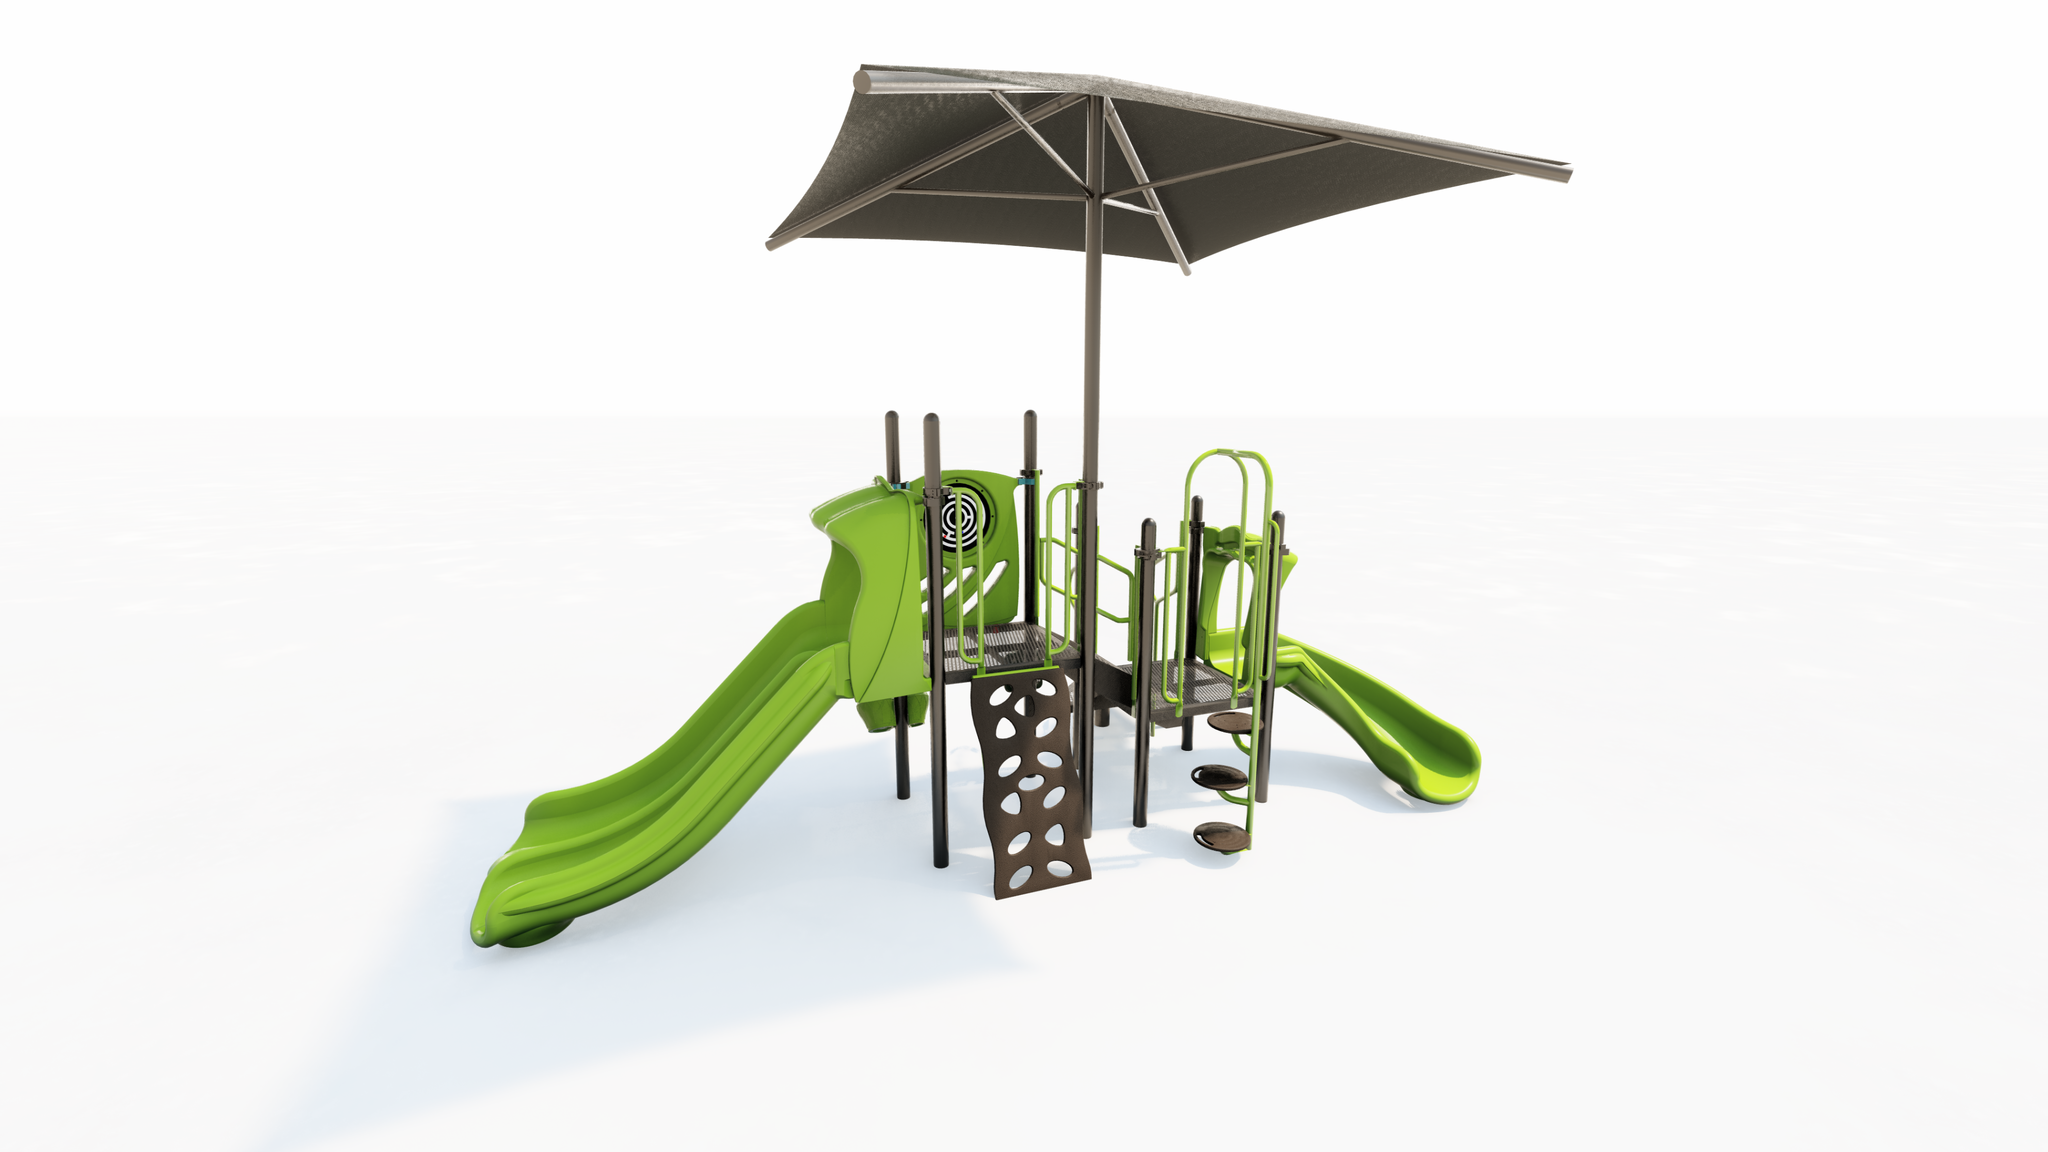 Playground Equipment Set with Shade